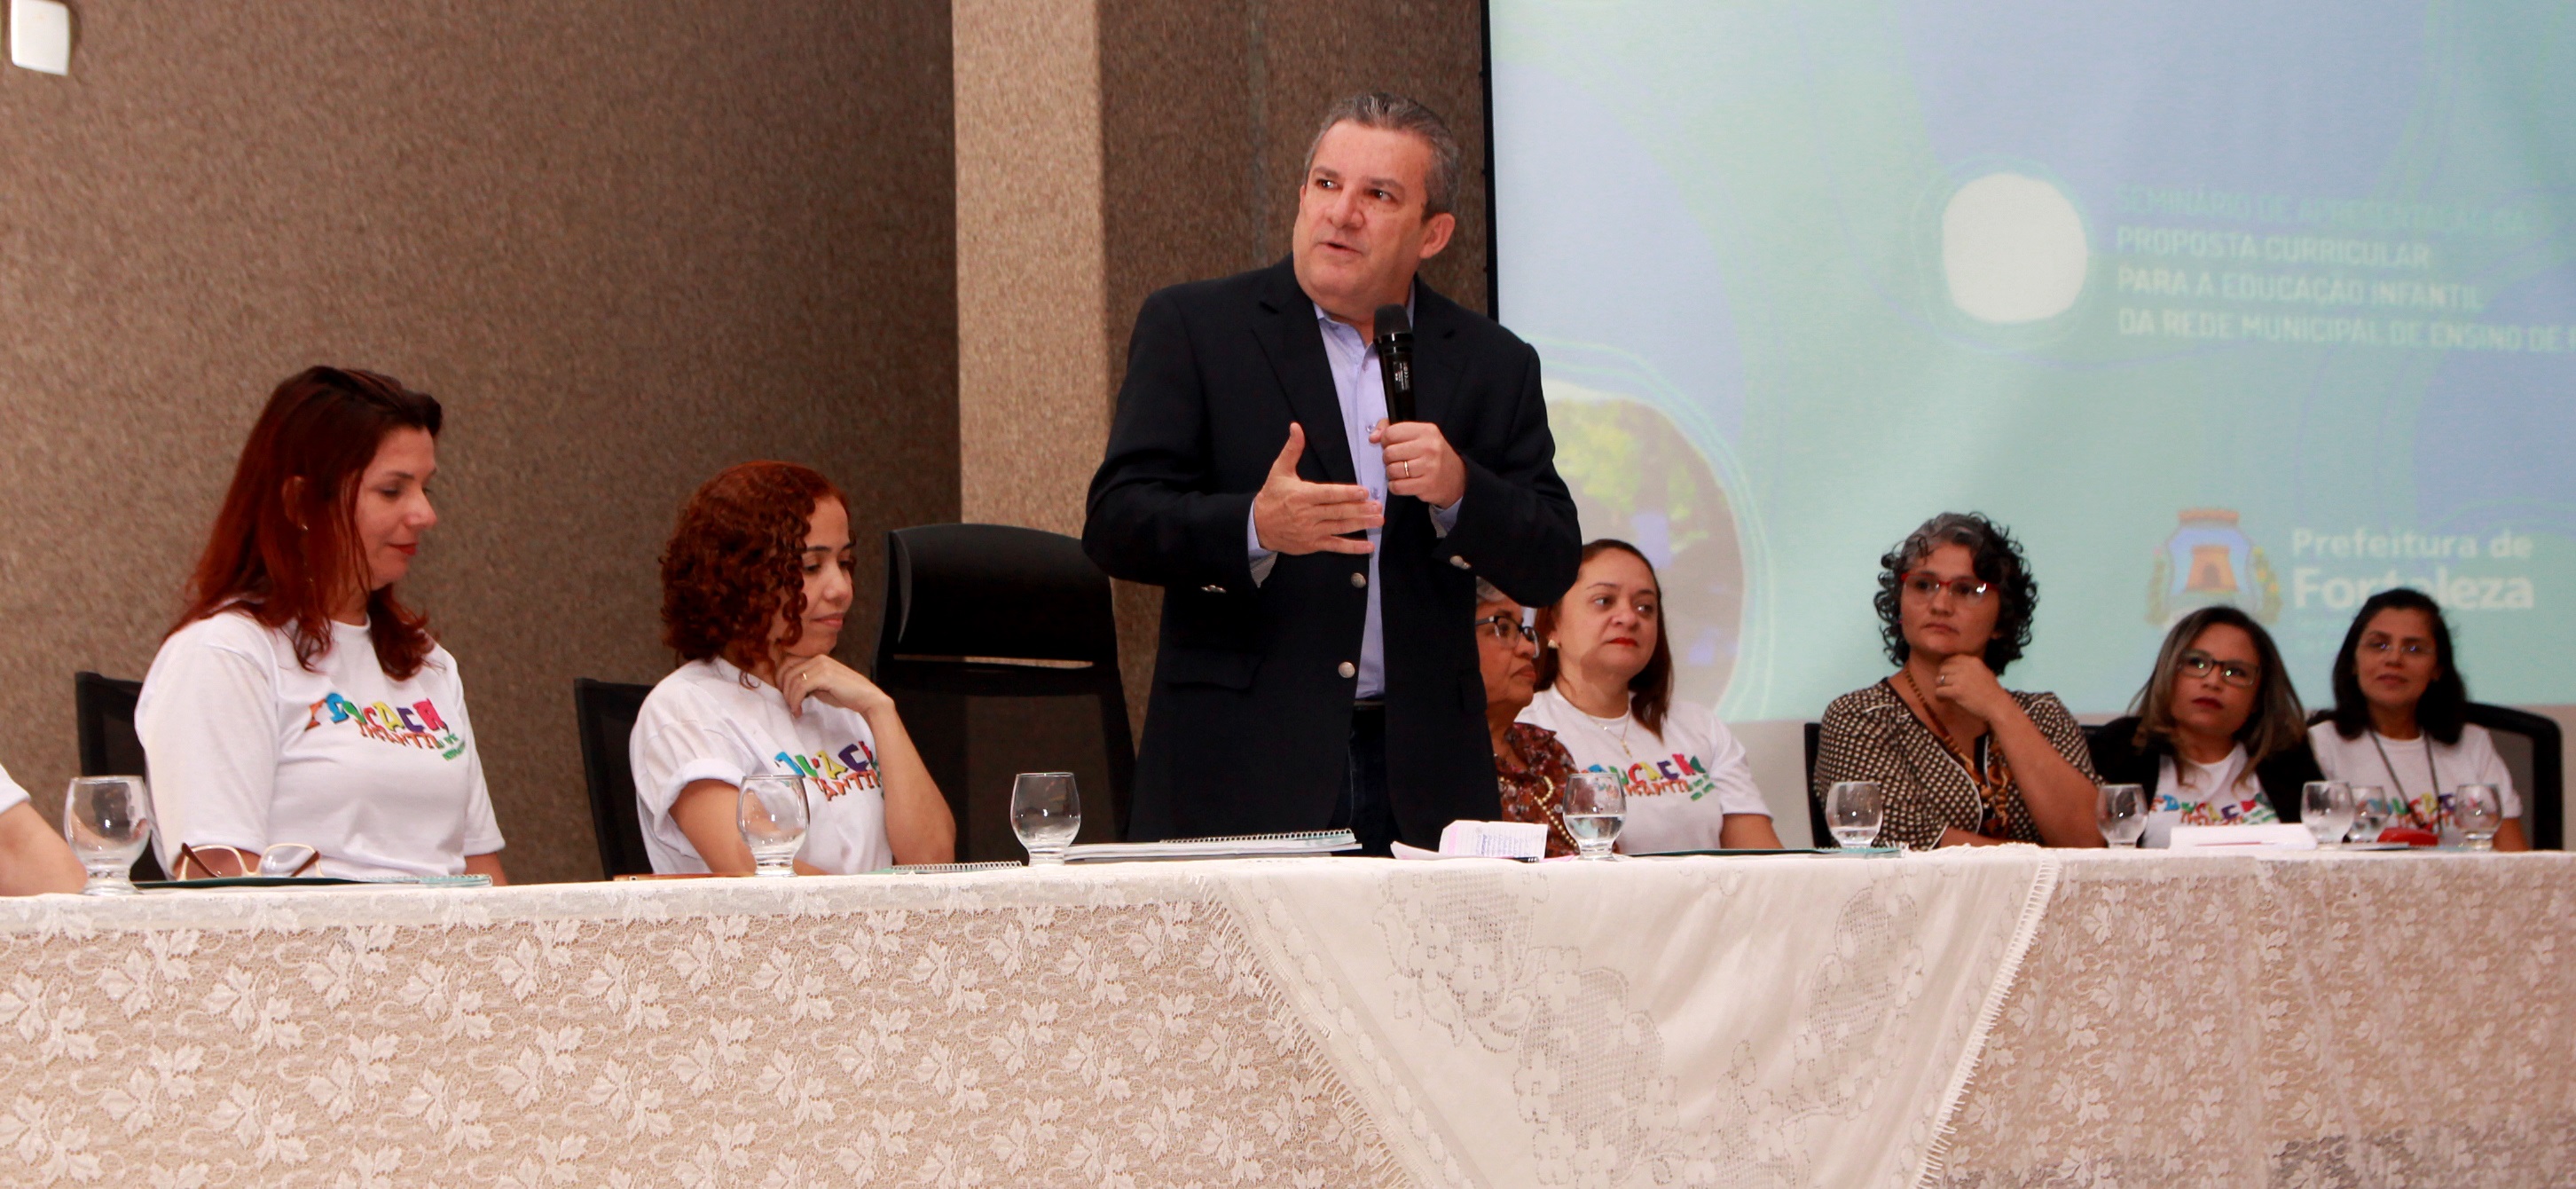 O secretário da Educação de Fortaleza, Jaime Cavalcante, ao centro de uma mesa, acompanhado da equipe da Coordenadoria da Educação Infantil da Secretaria Municipal da Educação (SME), fala ao microfone